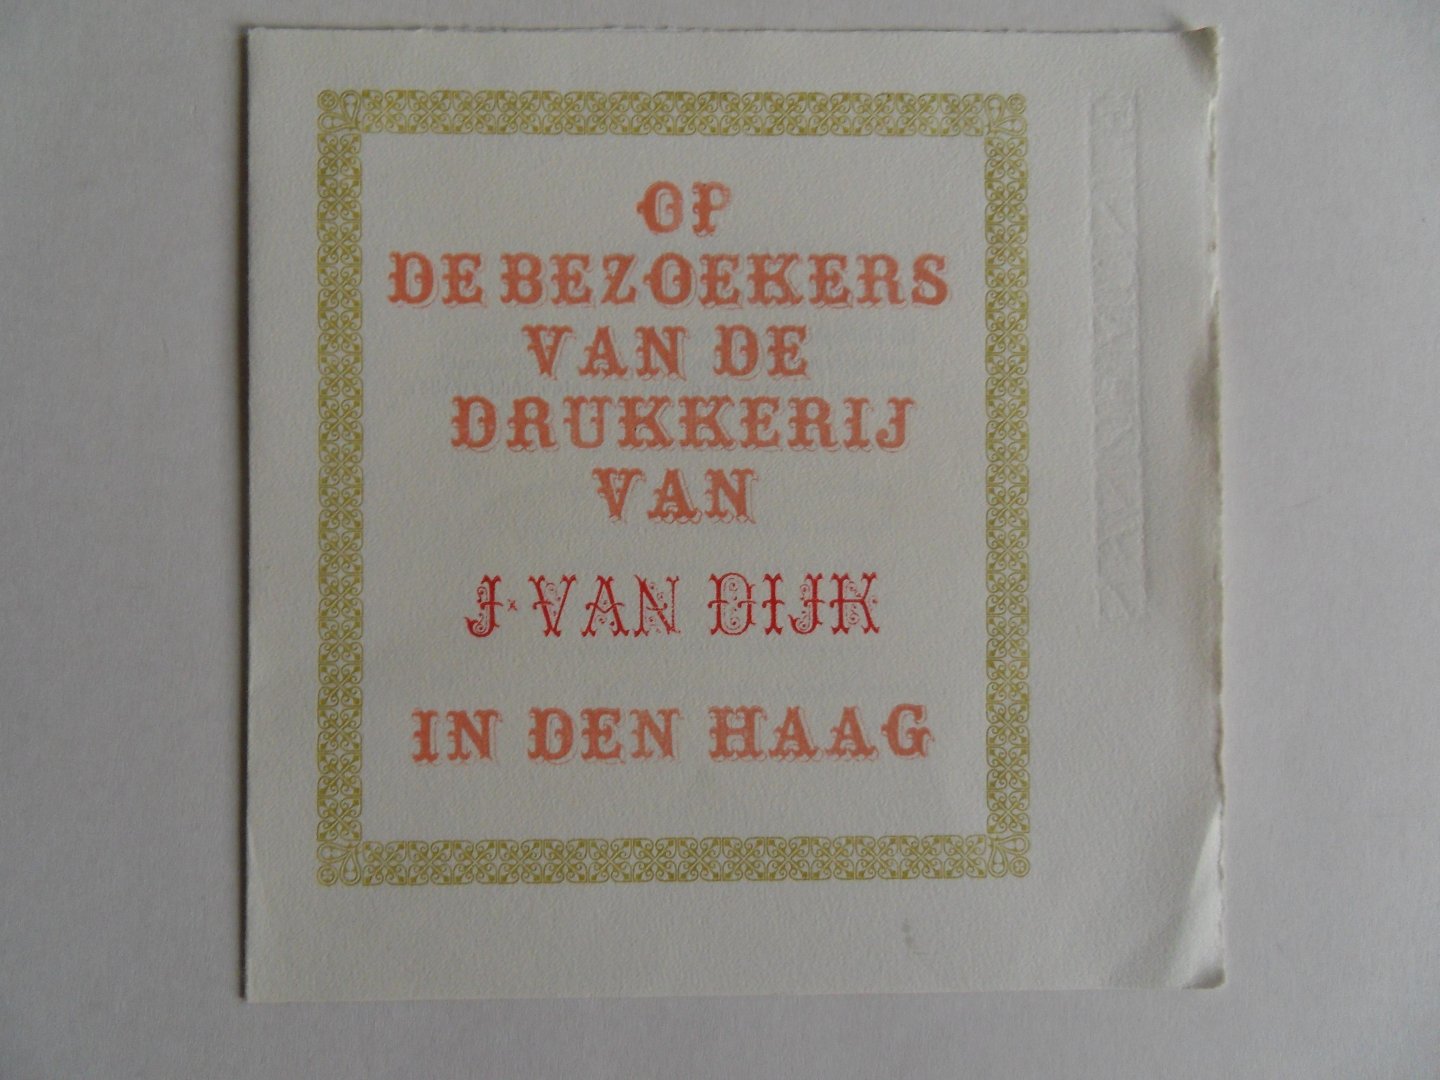 Eenige Jongens van Jan de Wit [ bijeenverzameld door ]. - Op de Bezoekers van de Drukkerij van J. van Dijk in Den Haag. [ Beperkte oplage, aantal niet vermeld ].